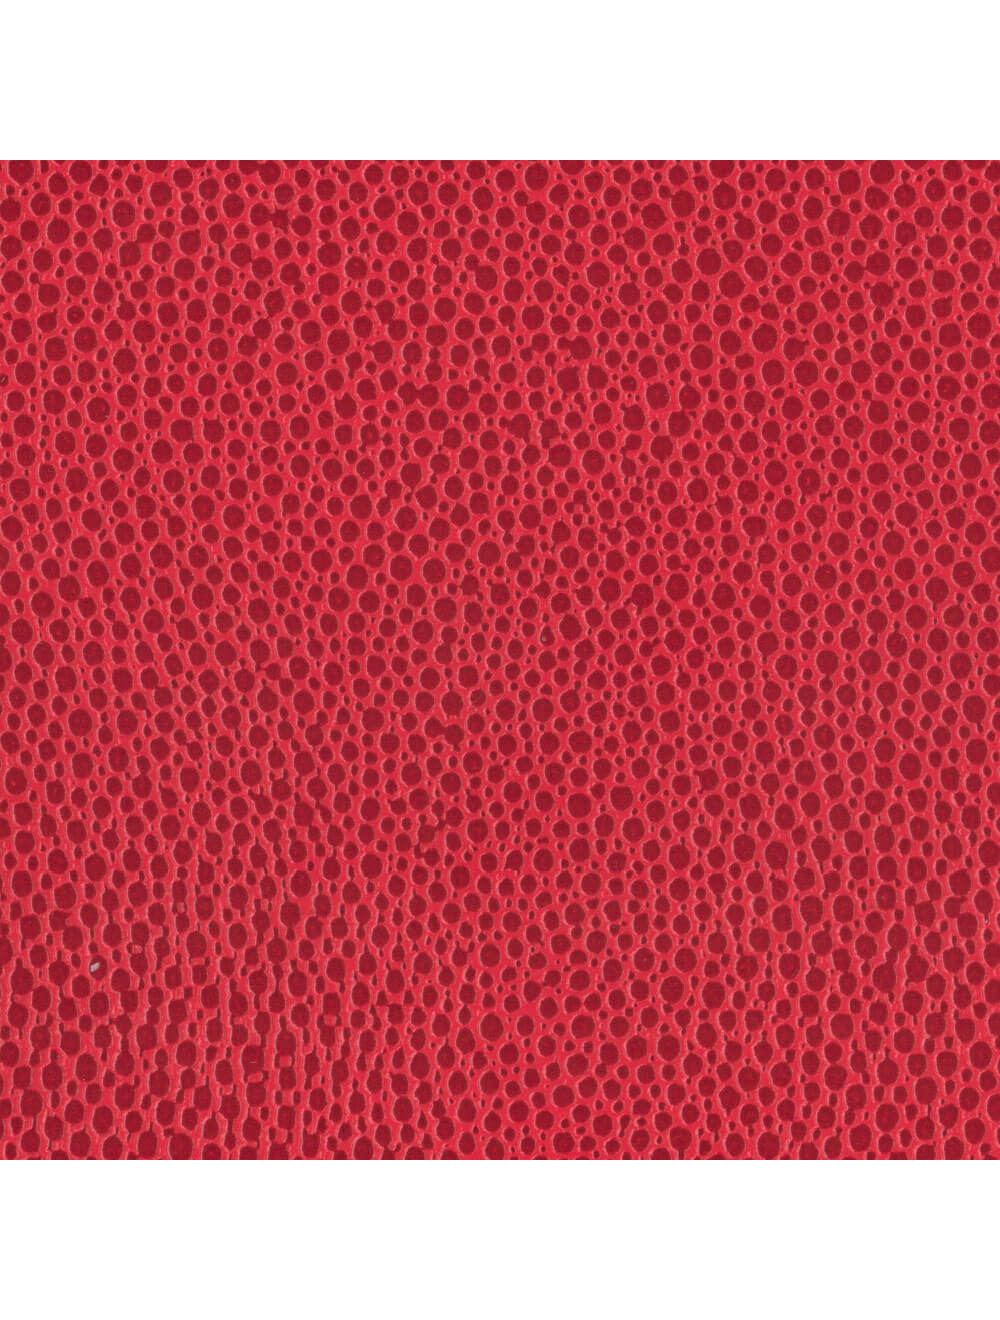 Swatch di materiale rosso di Berlin Mallory (PEM9226)